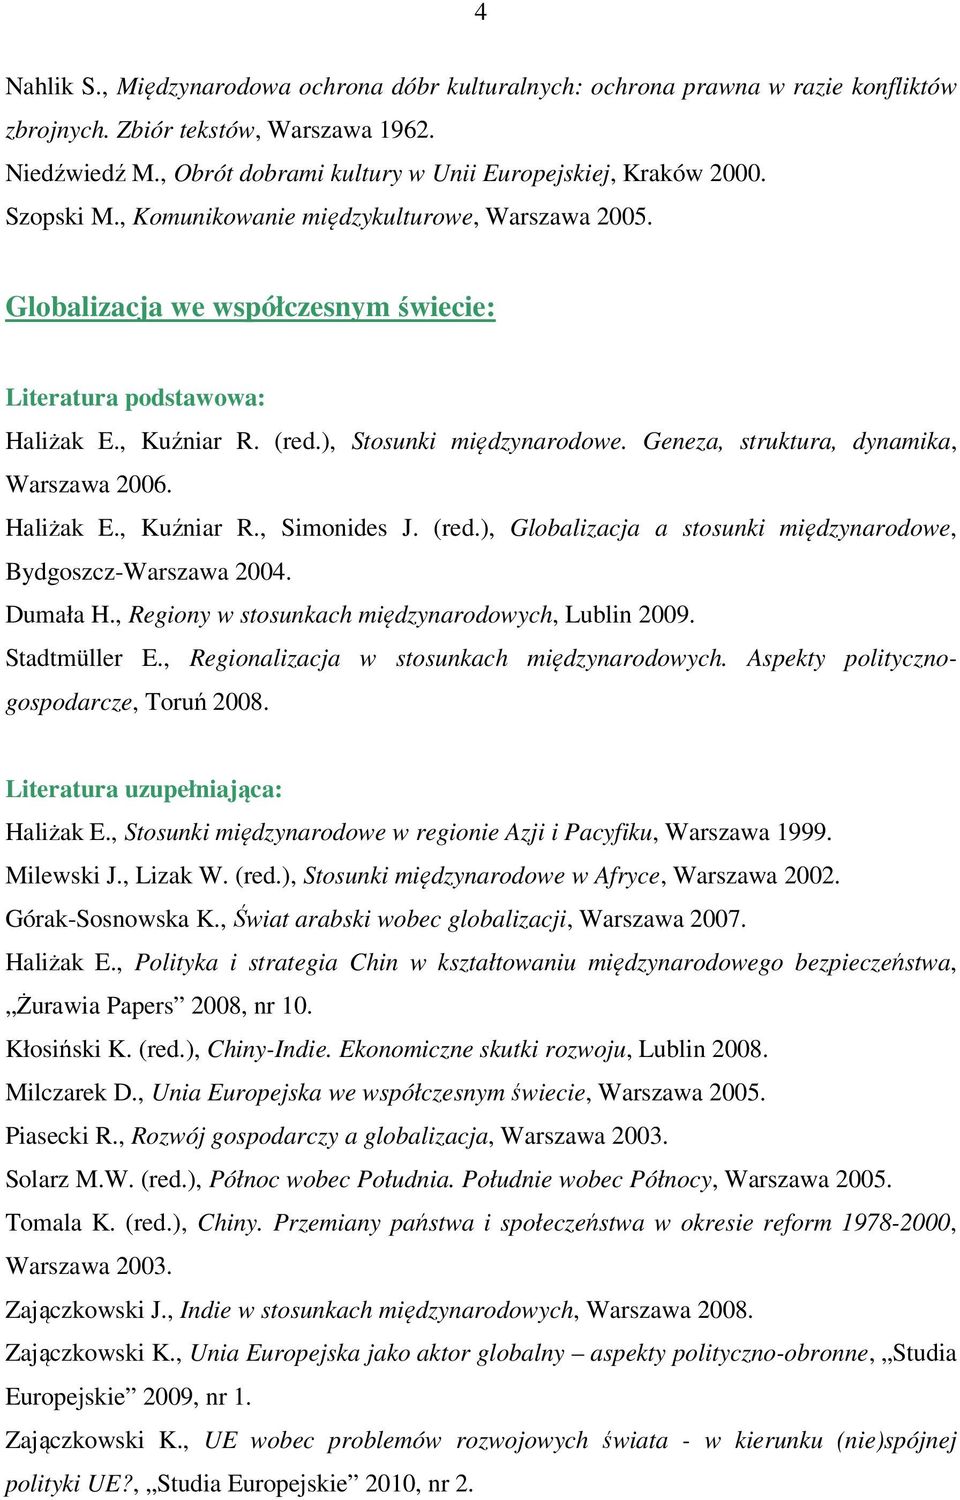 Haliżak E., Kuźniar R., Simonides J. (red.), Globalizacja a stosunki międzynarodowe, Bydgoszcz-Warszawa 2004. Dumała H., Regiony w stosunkach międzynarodowych, Lublin 2009. Stadtmüller E.